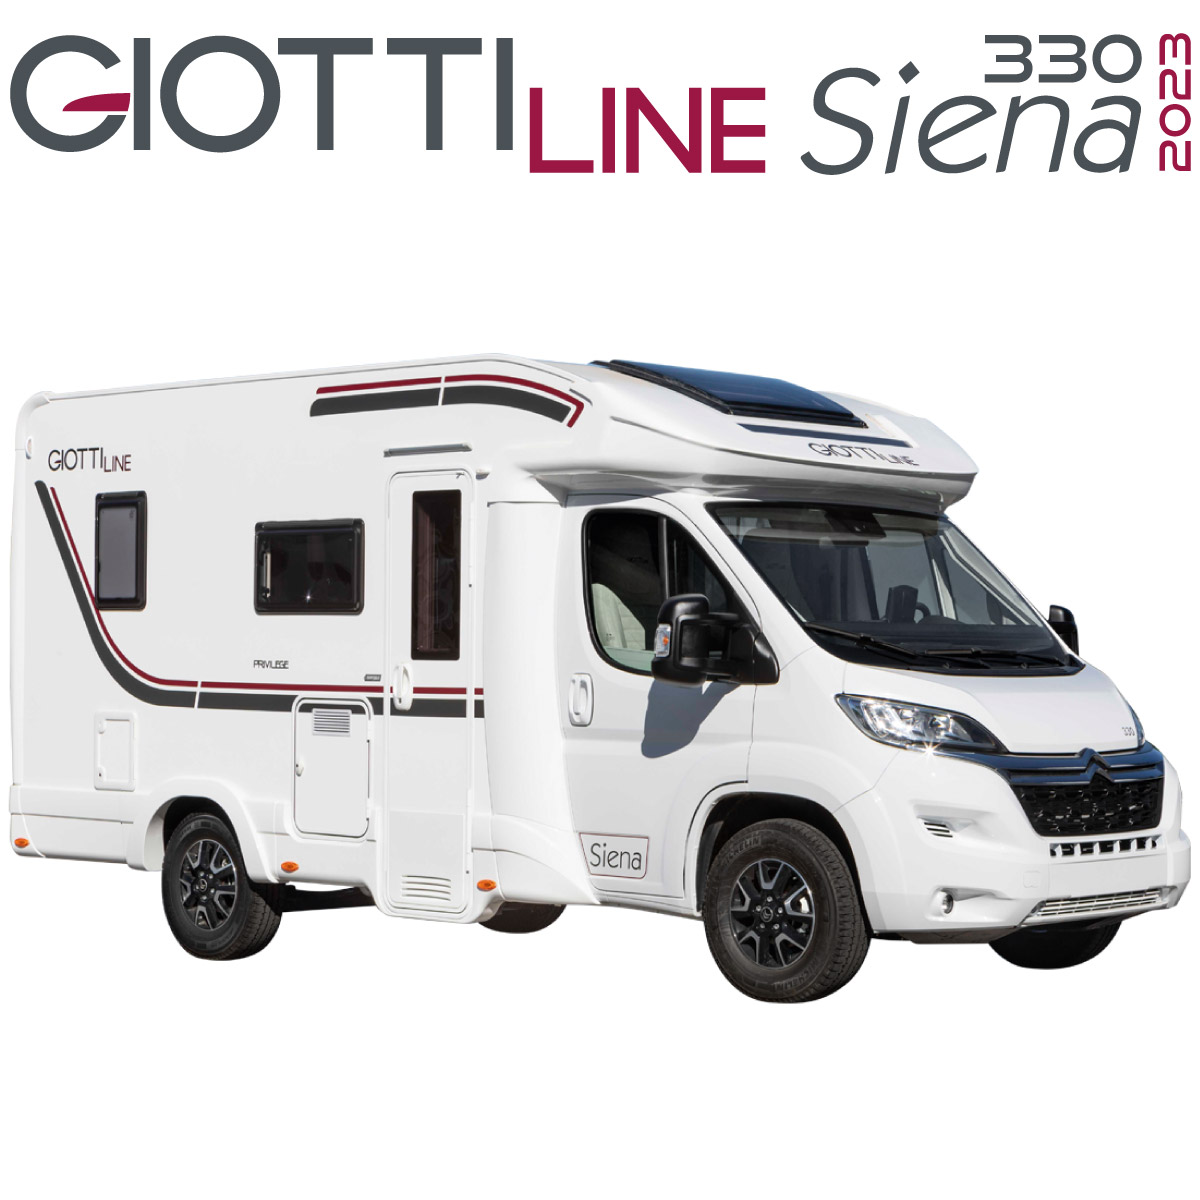 GiottiLine Siena 330 2023 Autocaravanas en León portada